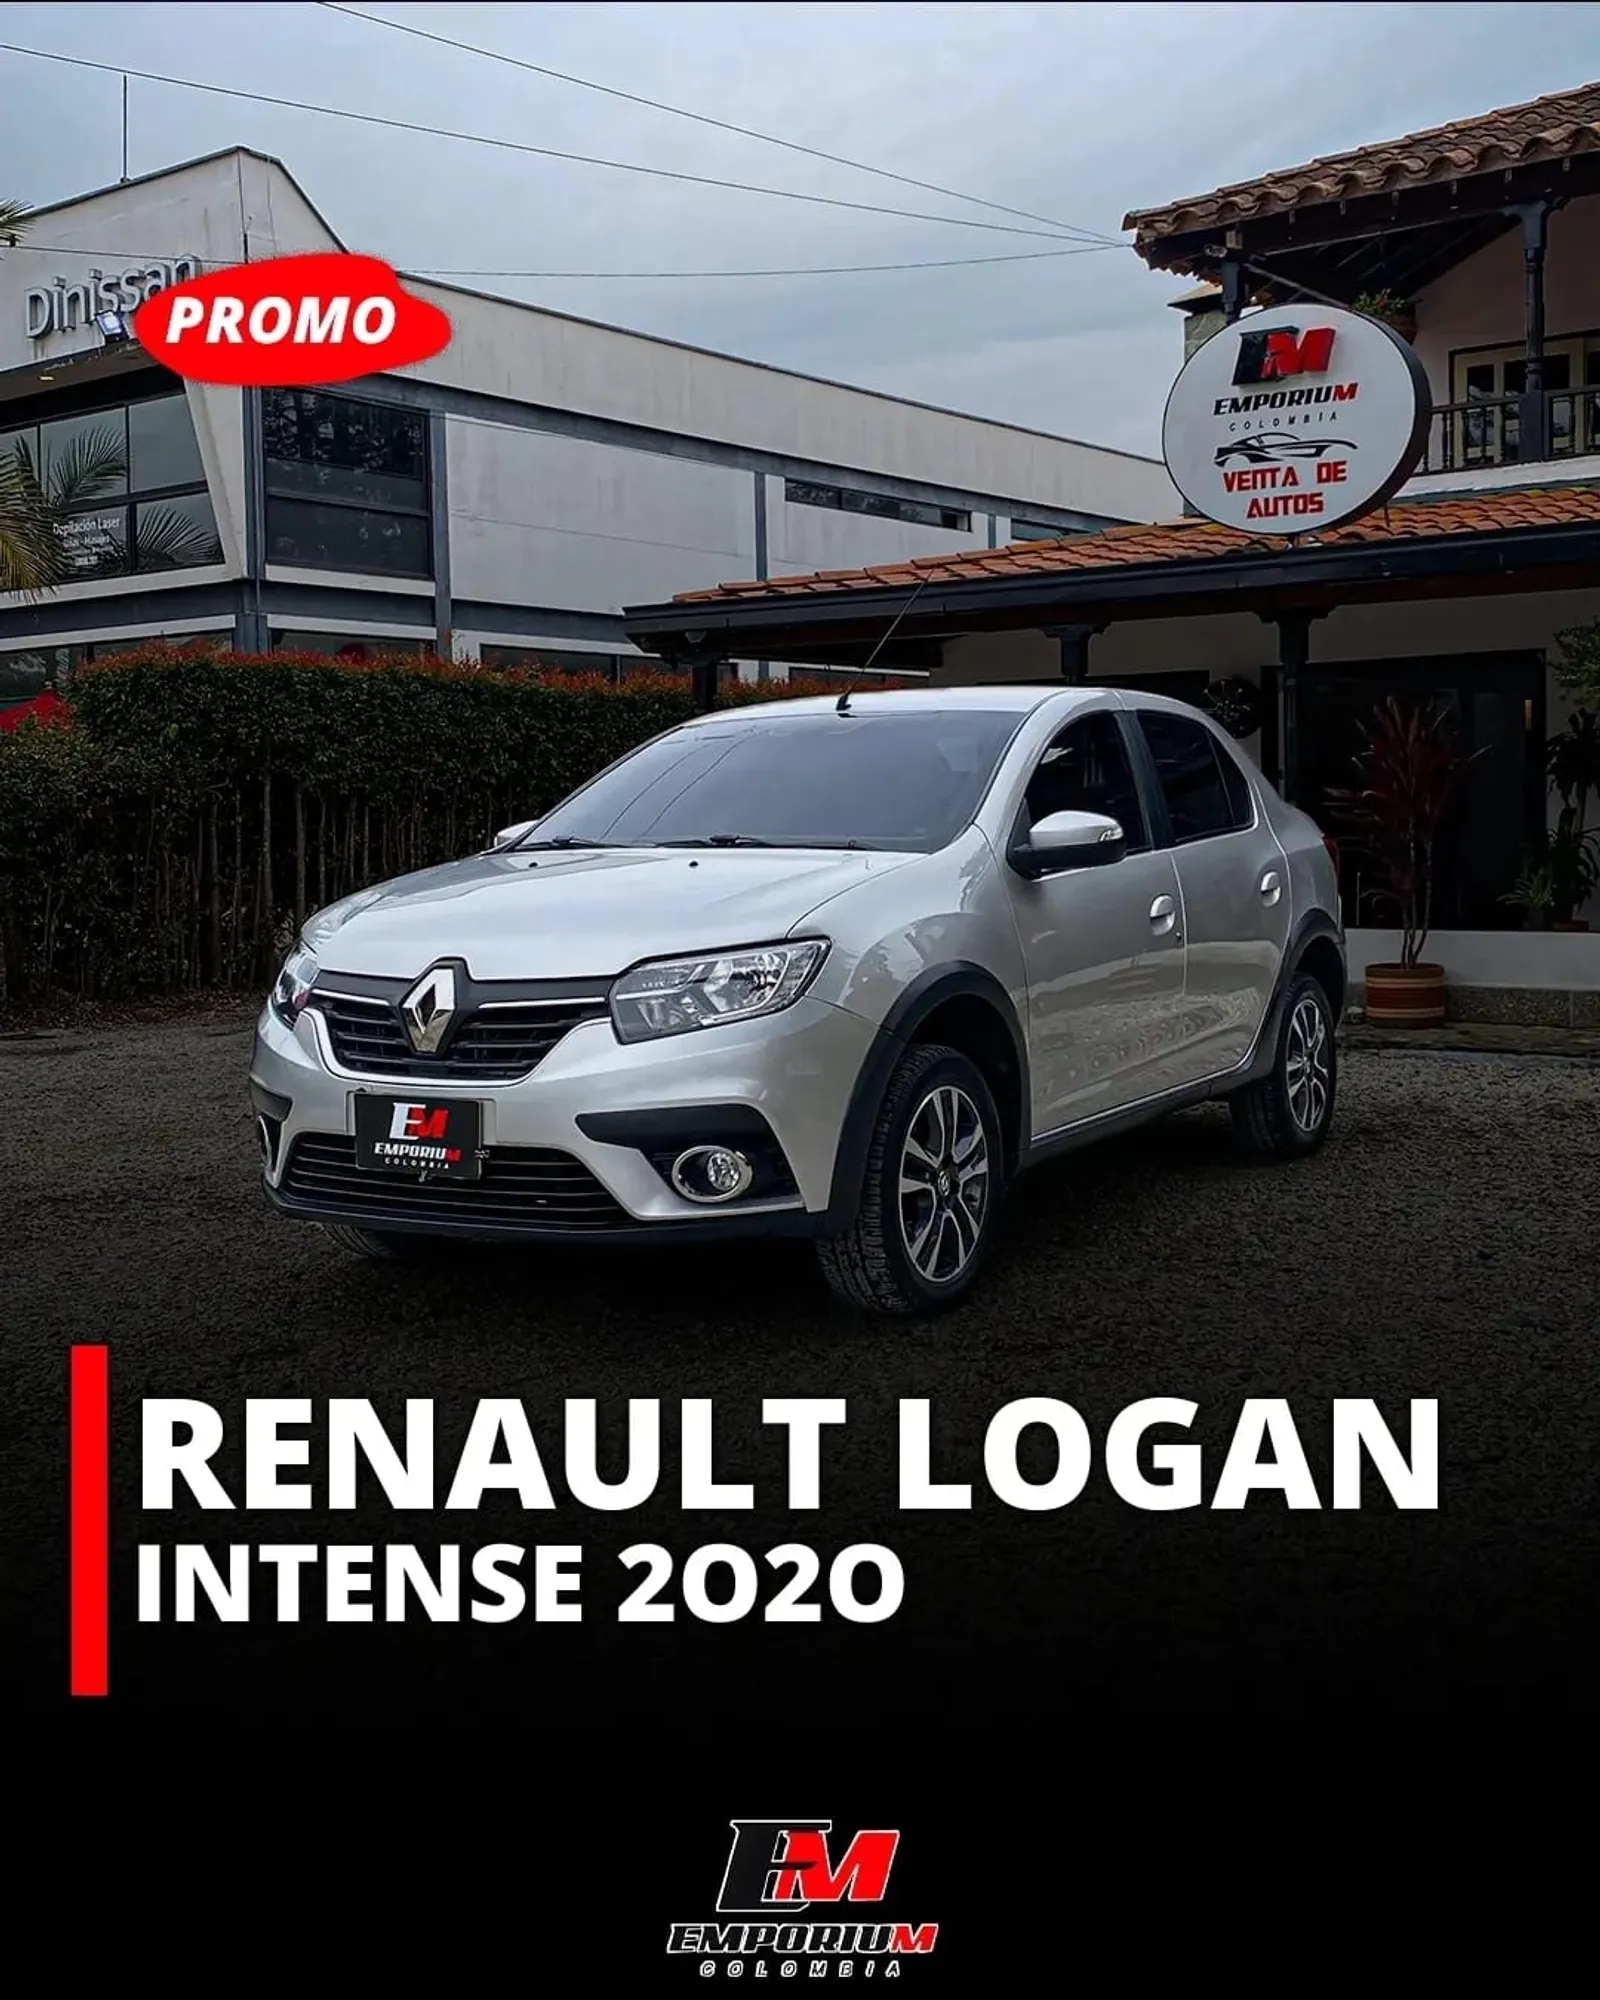 Renault Logan Intense 2020